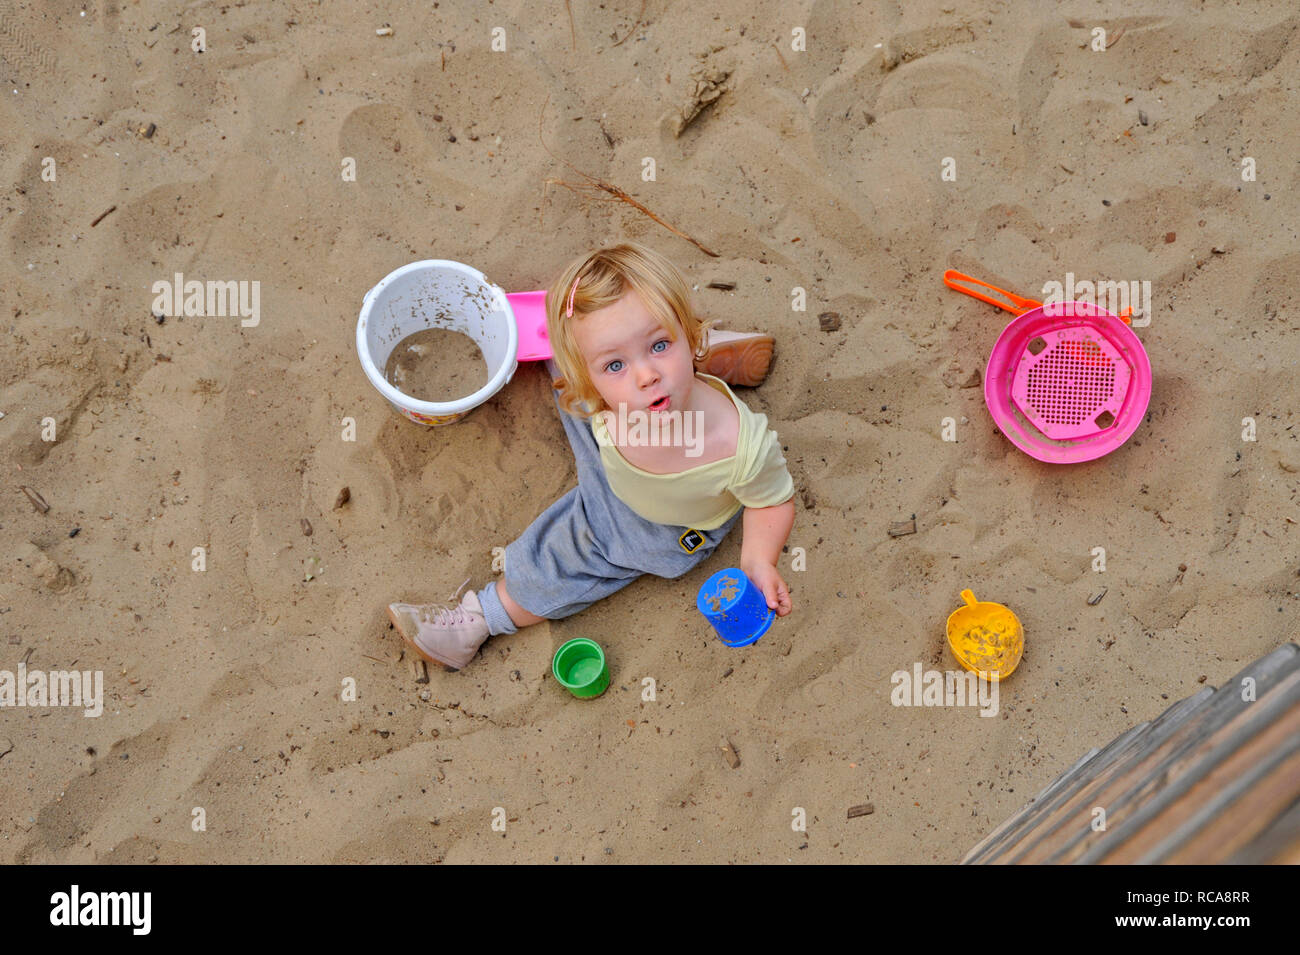 Kleines Art, Mädchen, 2 Jahre alt, mit dem Spielplatz | kleines Kind, 2 Jahre alt, auf einem Spielplatz Stockfoto